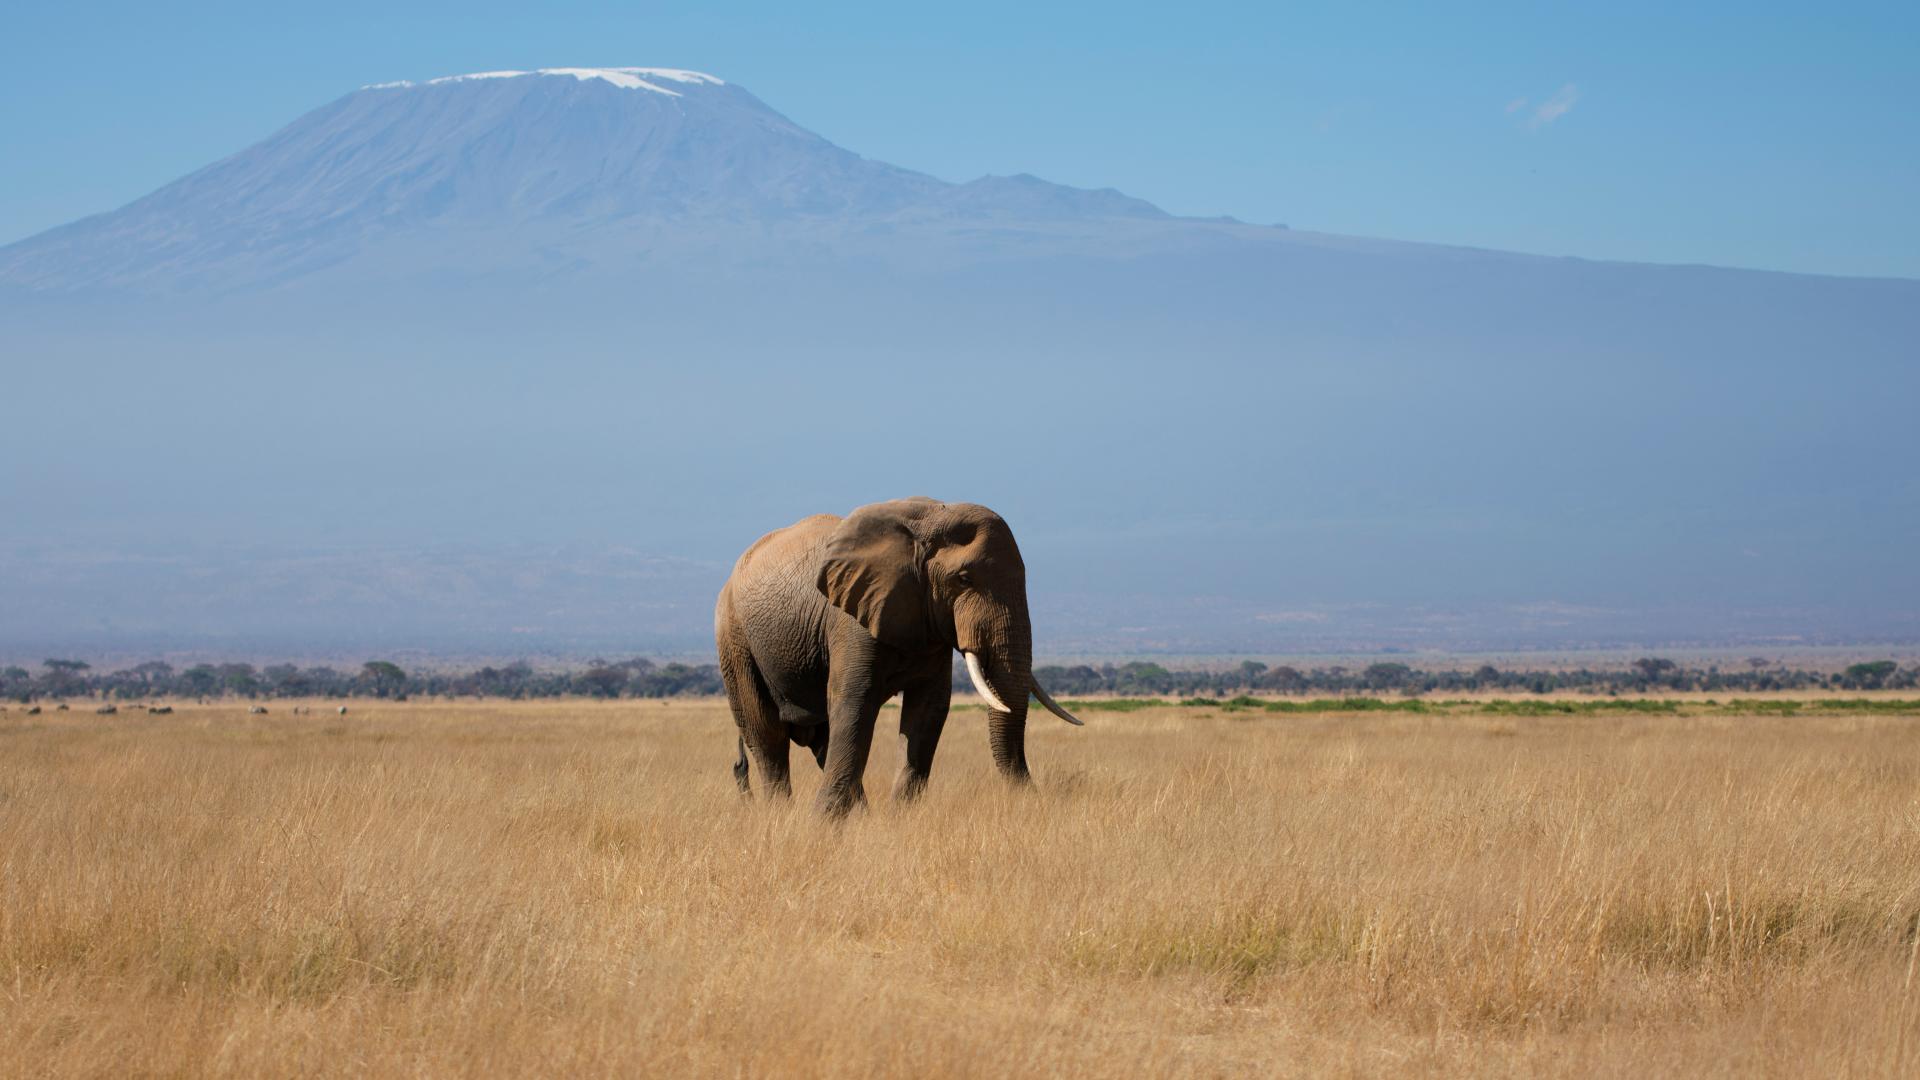 Wild elephant in a field in Africa